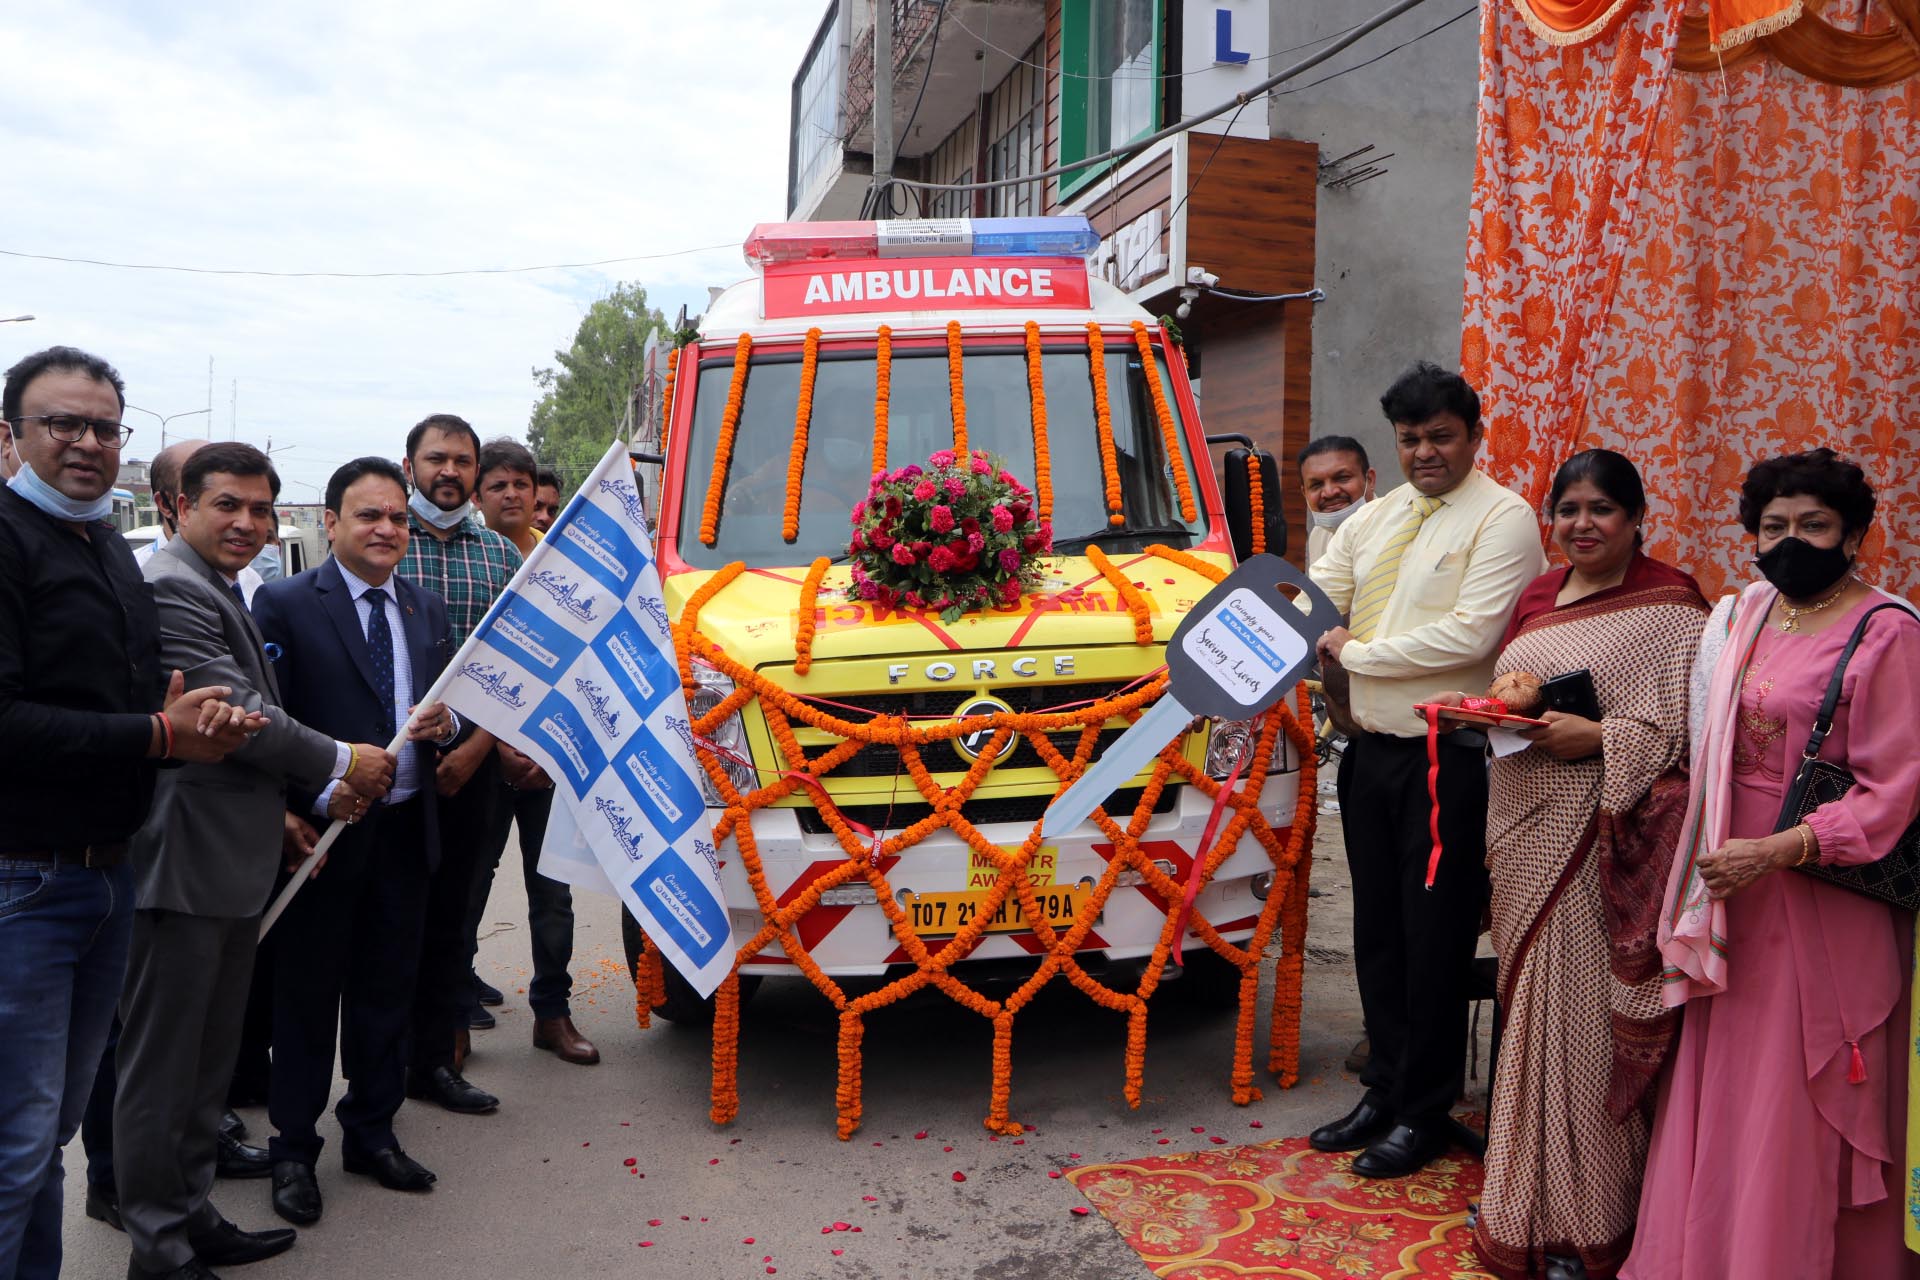 Ambulance donated to New Lifeline Hospital, Zirakpur under CSR